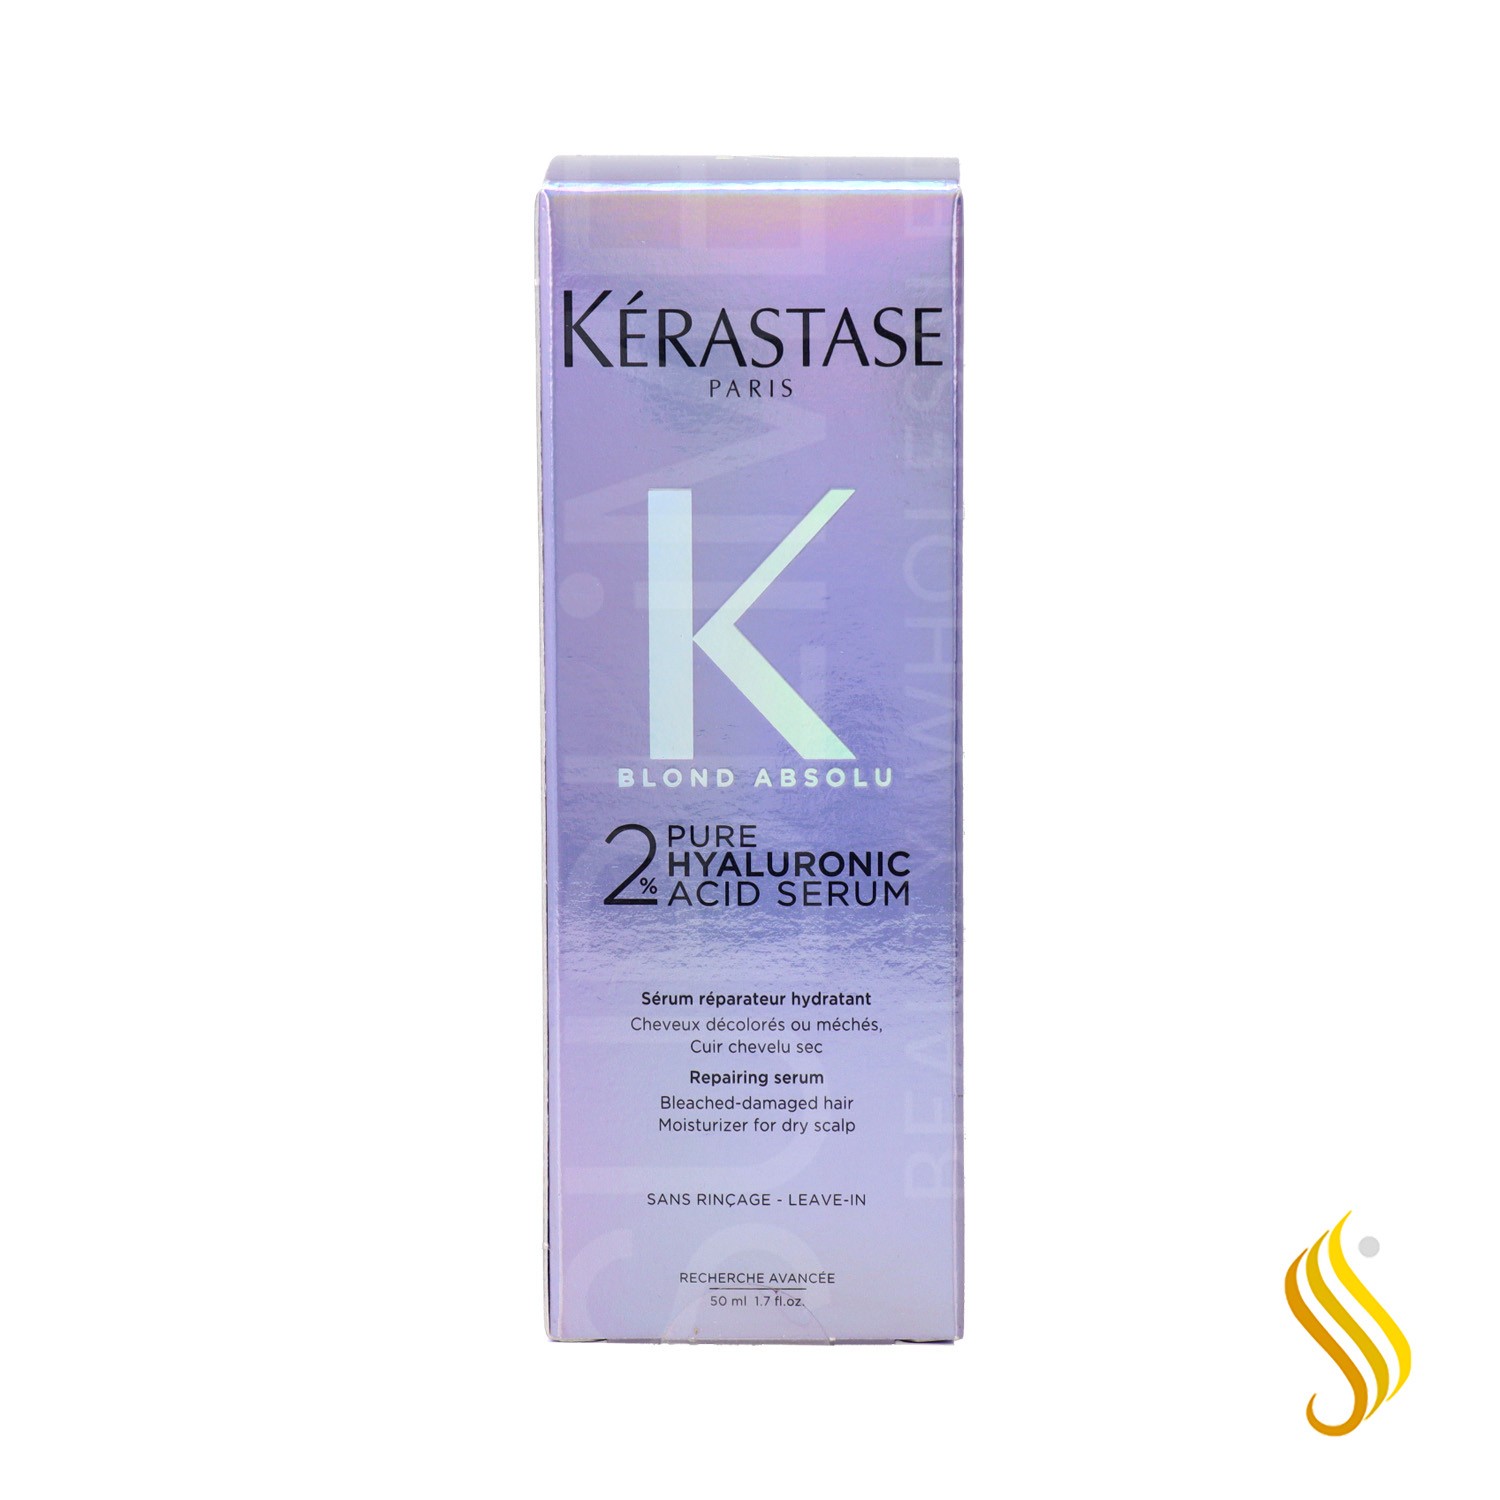 Kérastase Blond Absolu Repairing 2% Pure Hyaluronic Acid Serum 50 ml